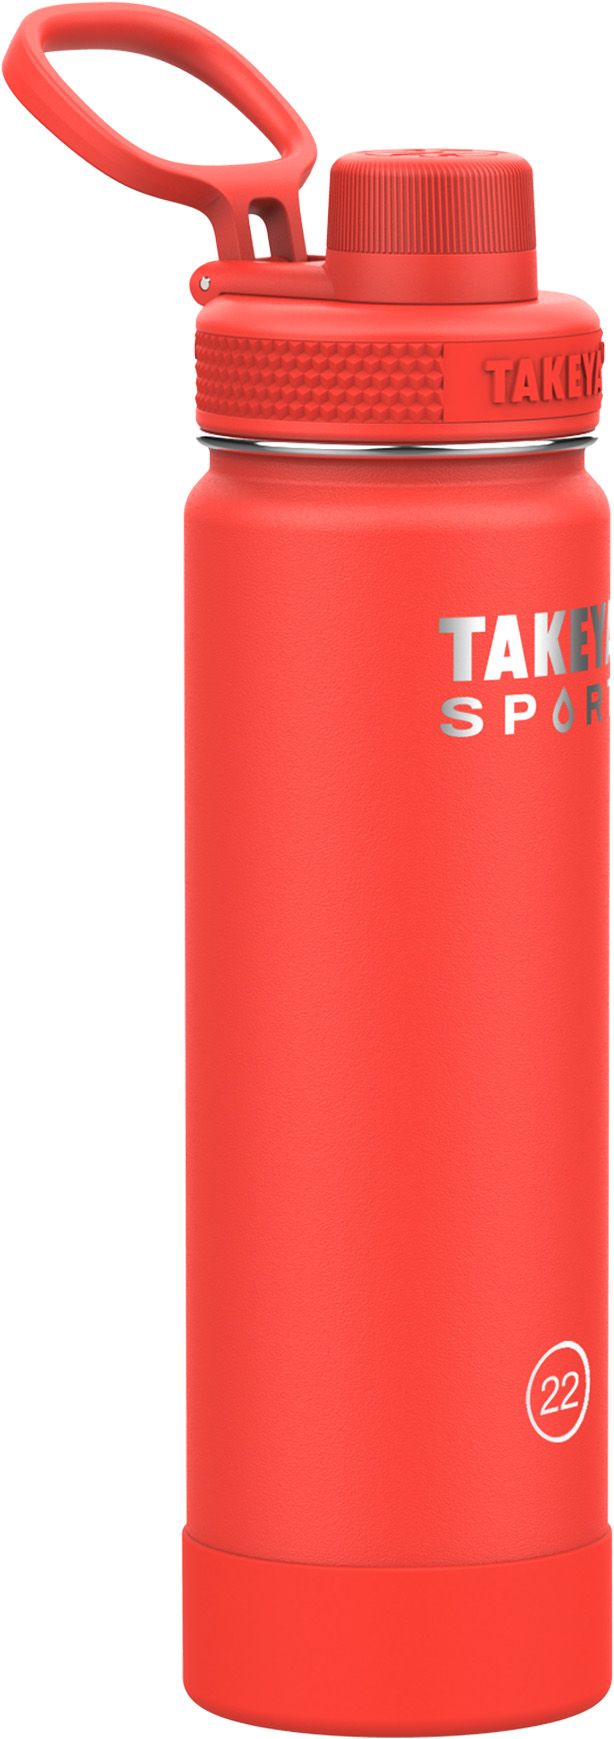 Takeya Sport 22 oz. Water Bottle with Spout Lid